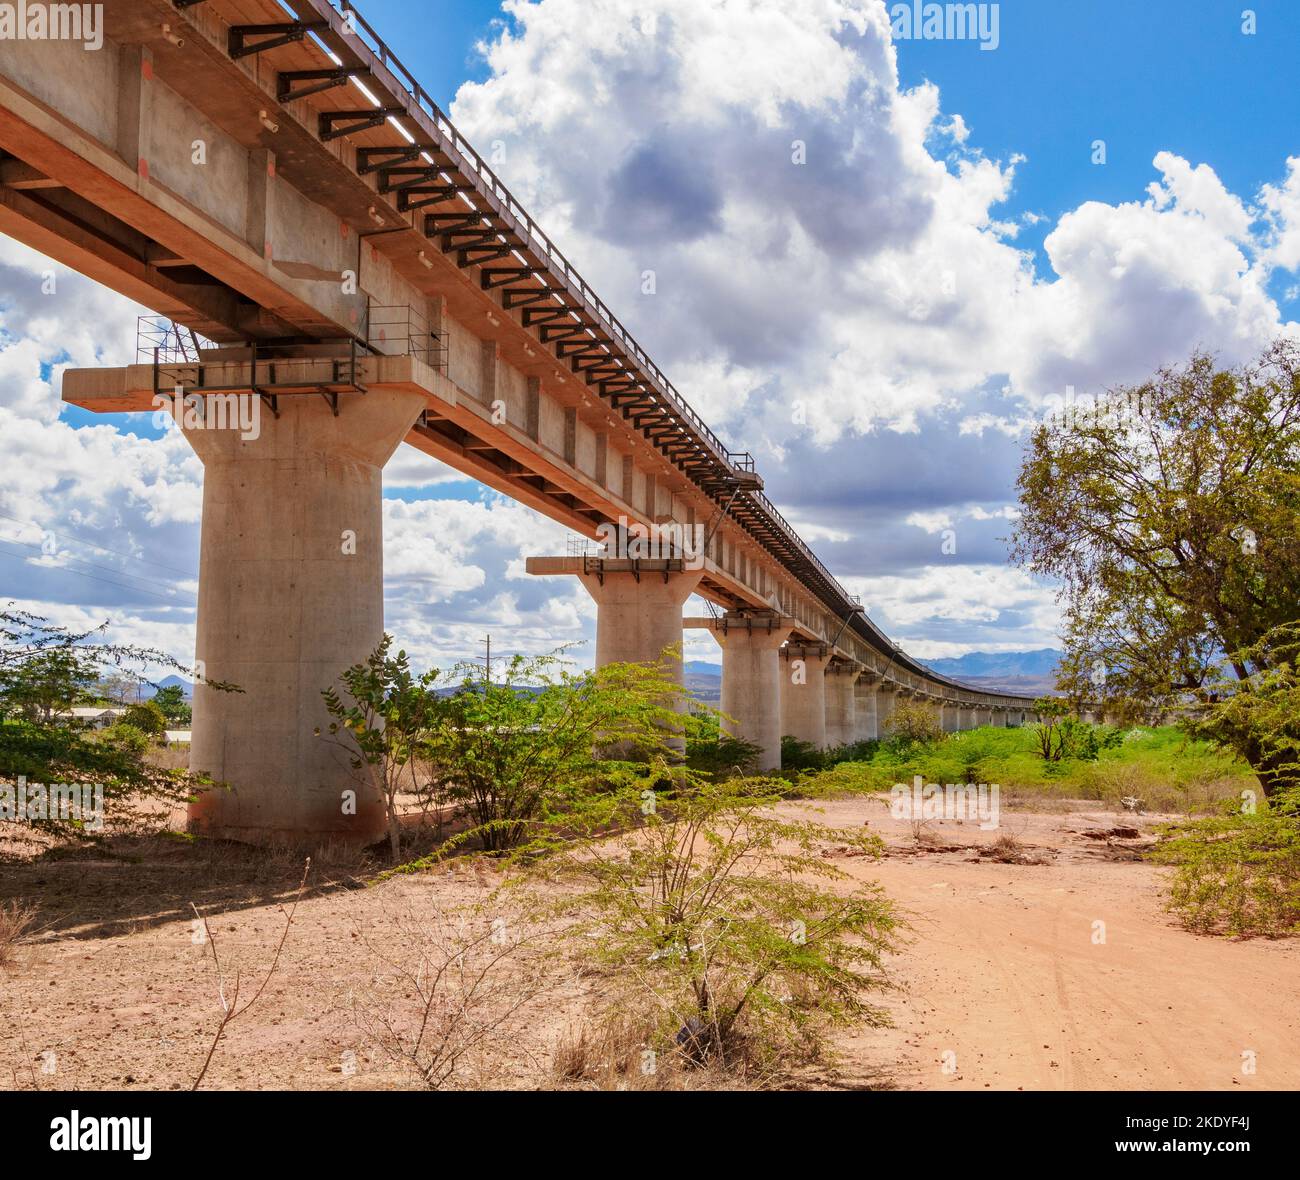 Sezione sollevata della sezione da Nairobi a Mombasa della ferrovia a scartamento standard finanziata dalla Cina mentre passa attraverso voi in Kenya Foto Stock